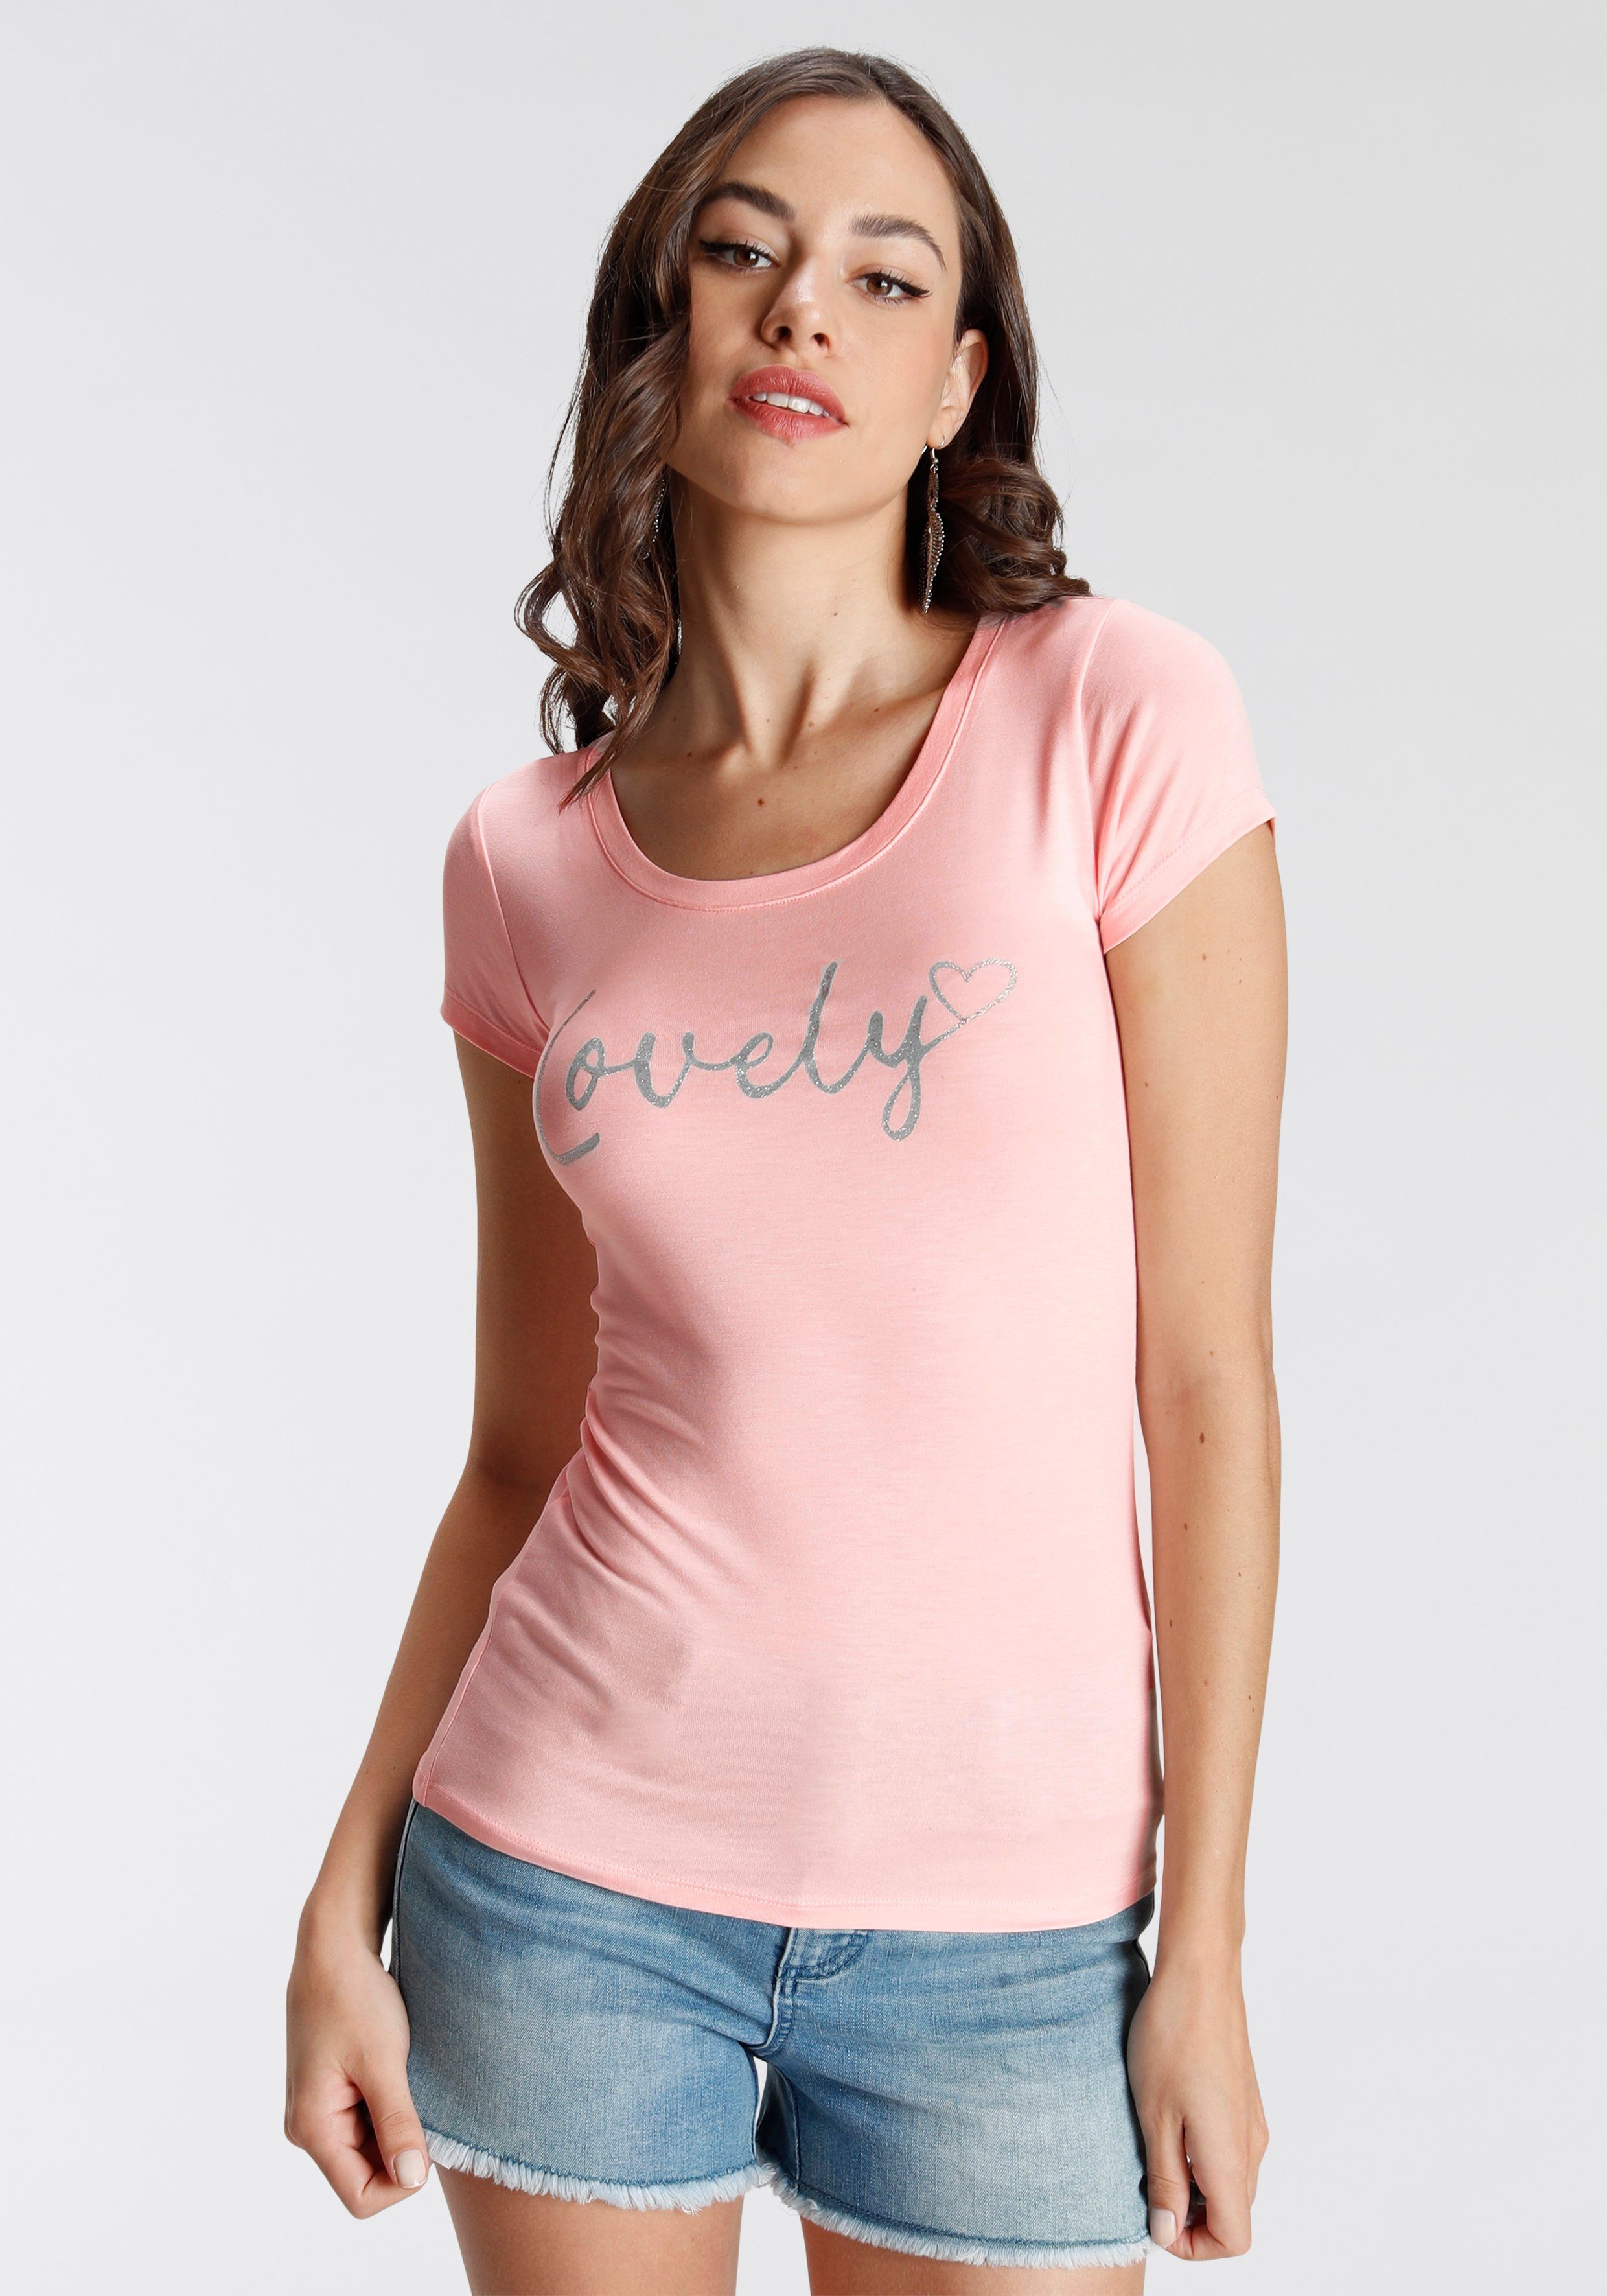 Offizielle japanische Versandhandelsseite Melrose T-Shirt mit Glitzerdruck, Mit der Glitzerdruck auf Brust